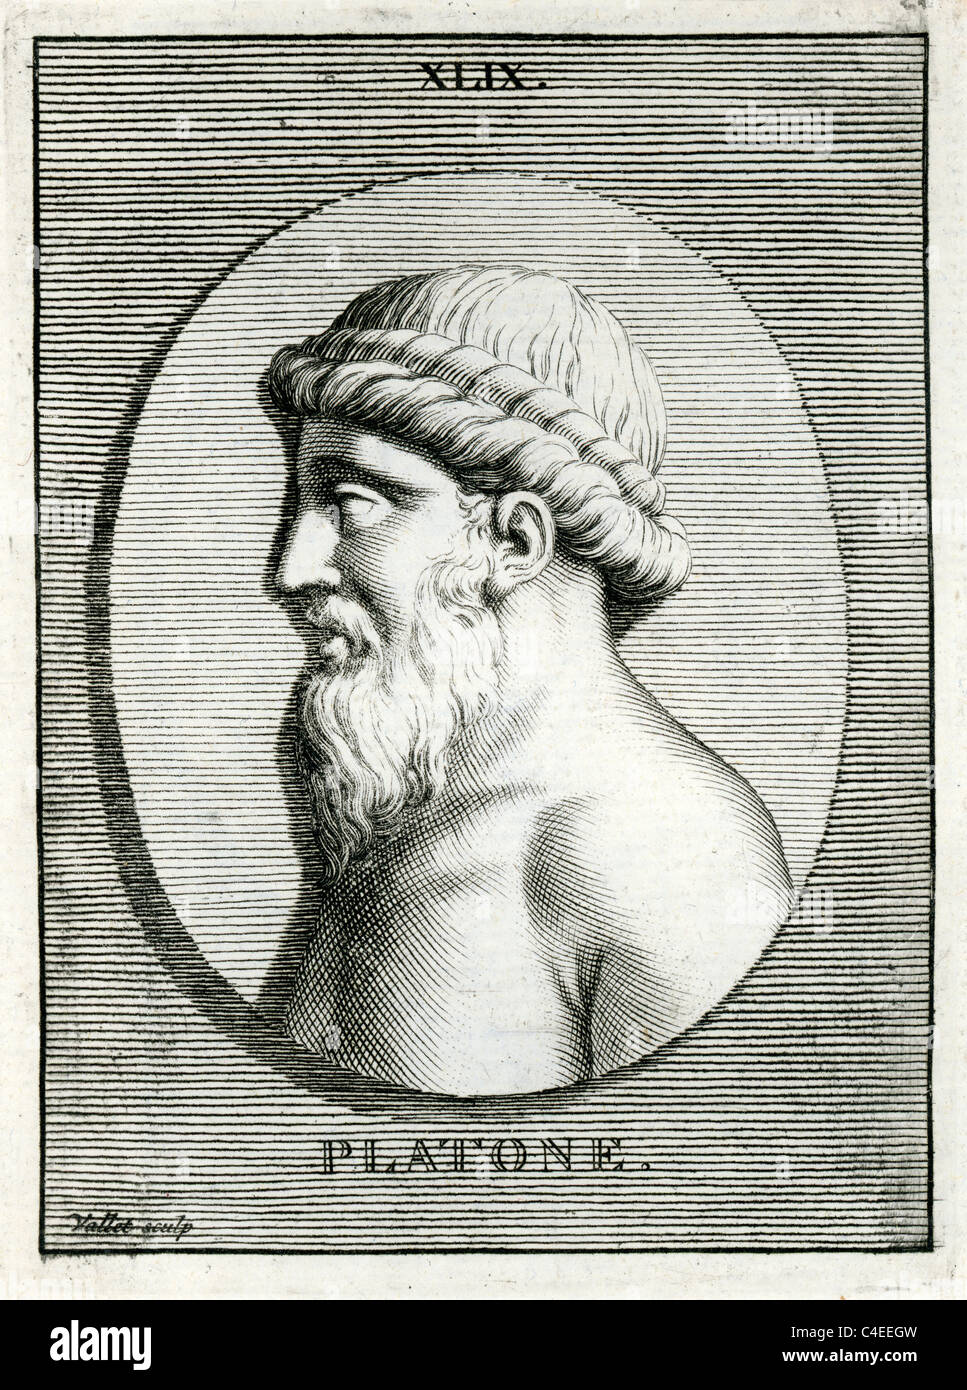 Ritratto classico di Platone un classico greco filosofo, matematico, studente di Socrate, scrittore di dialoghi filosofici Foto Stock